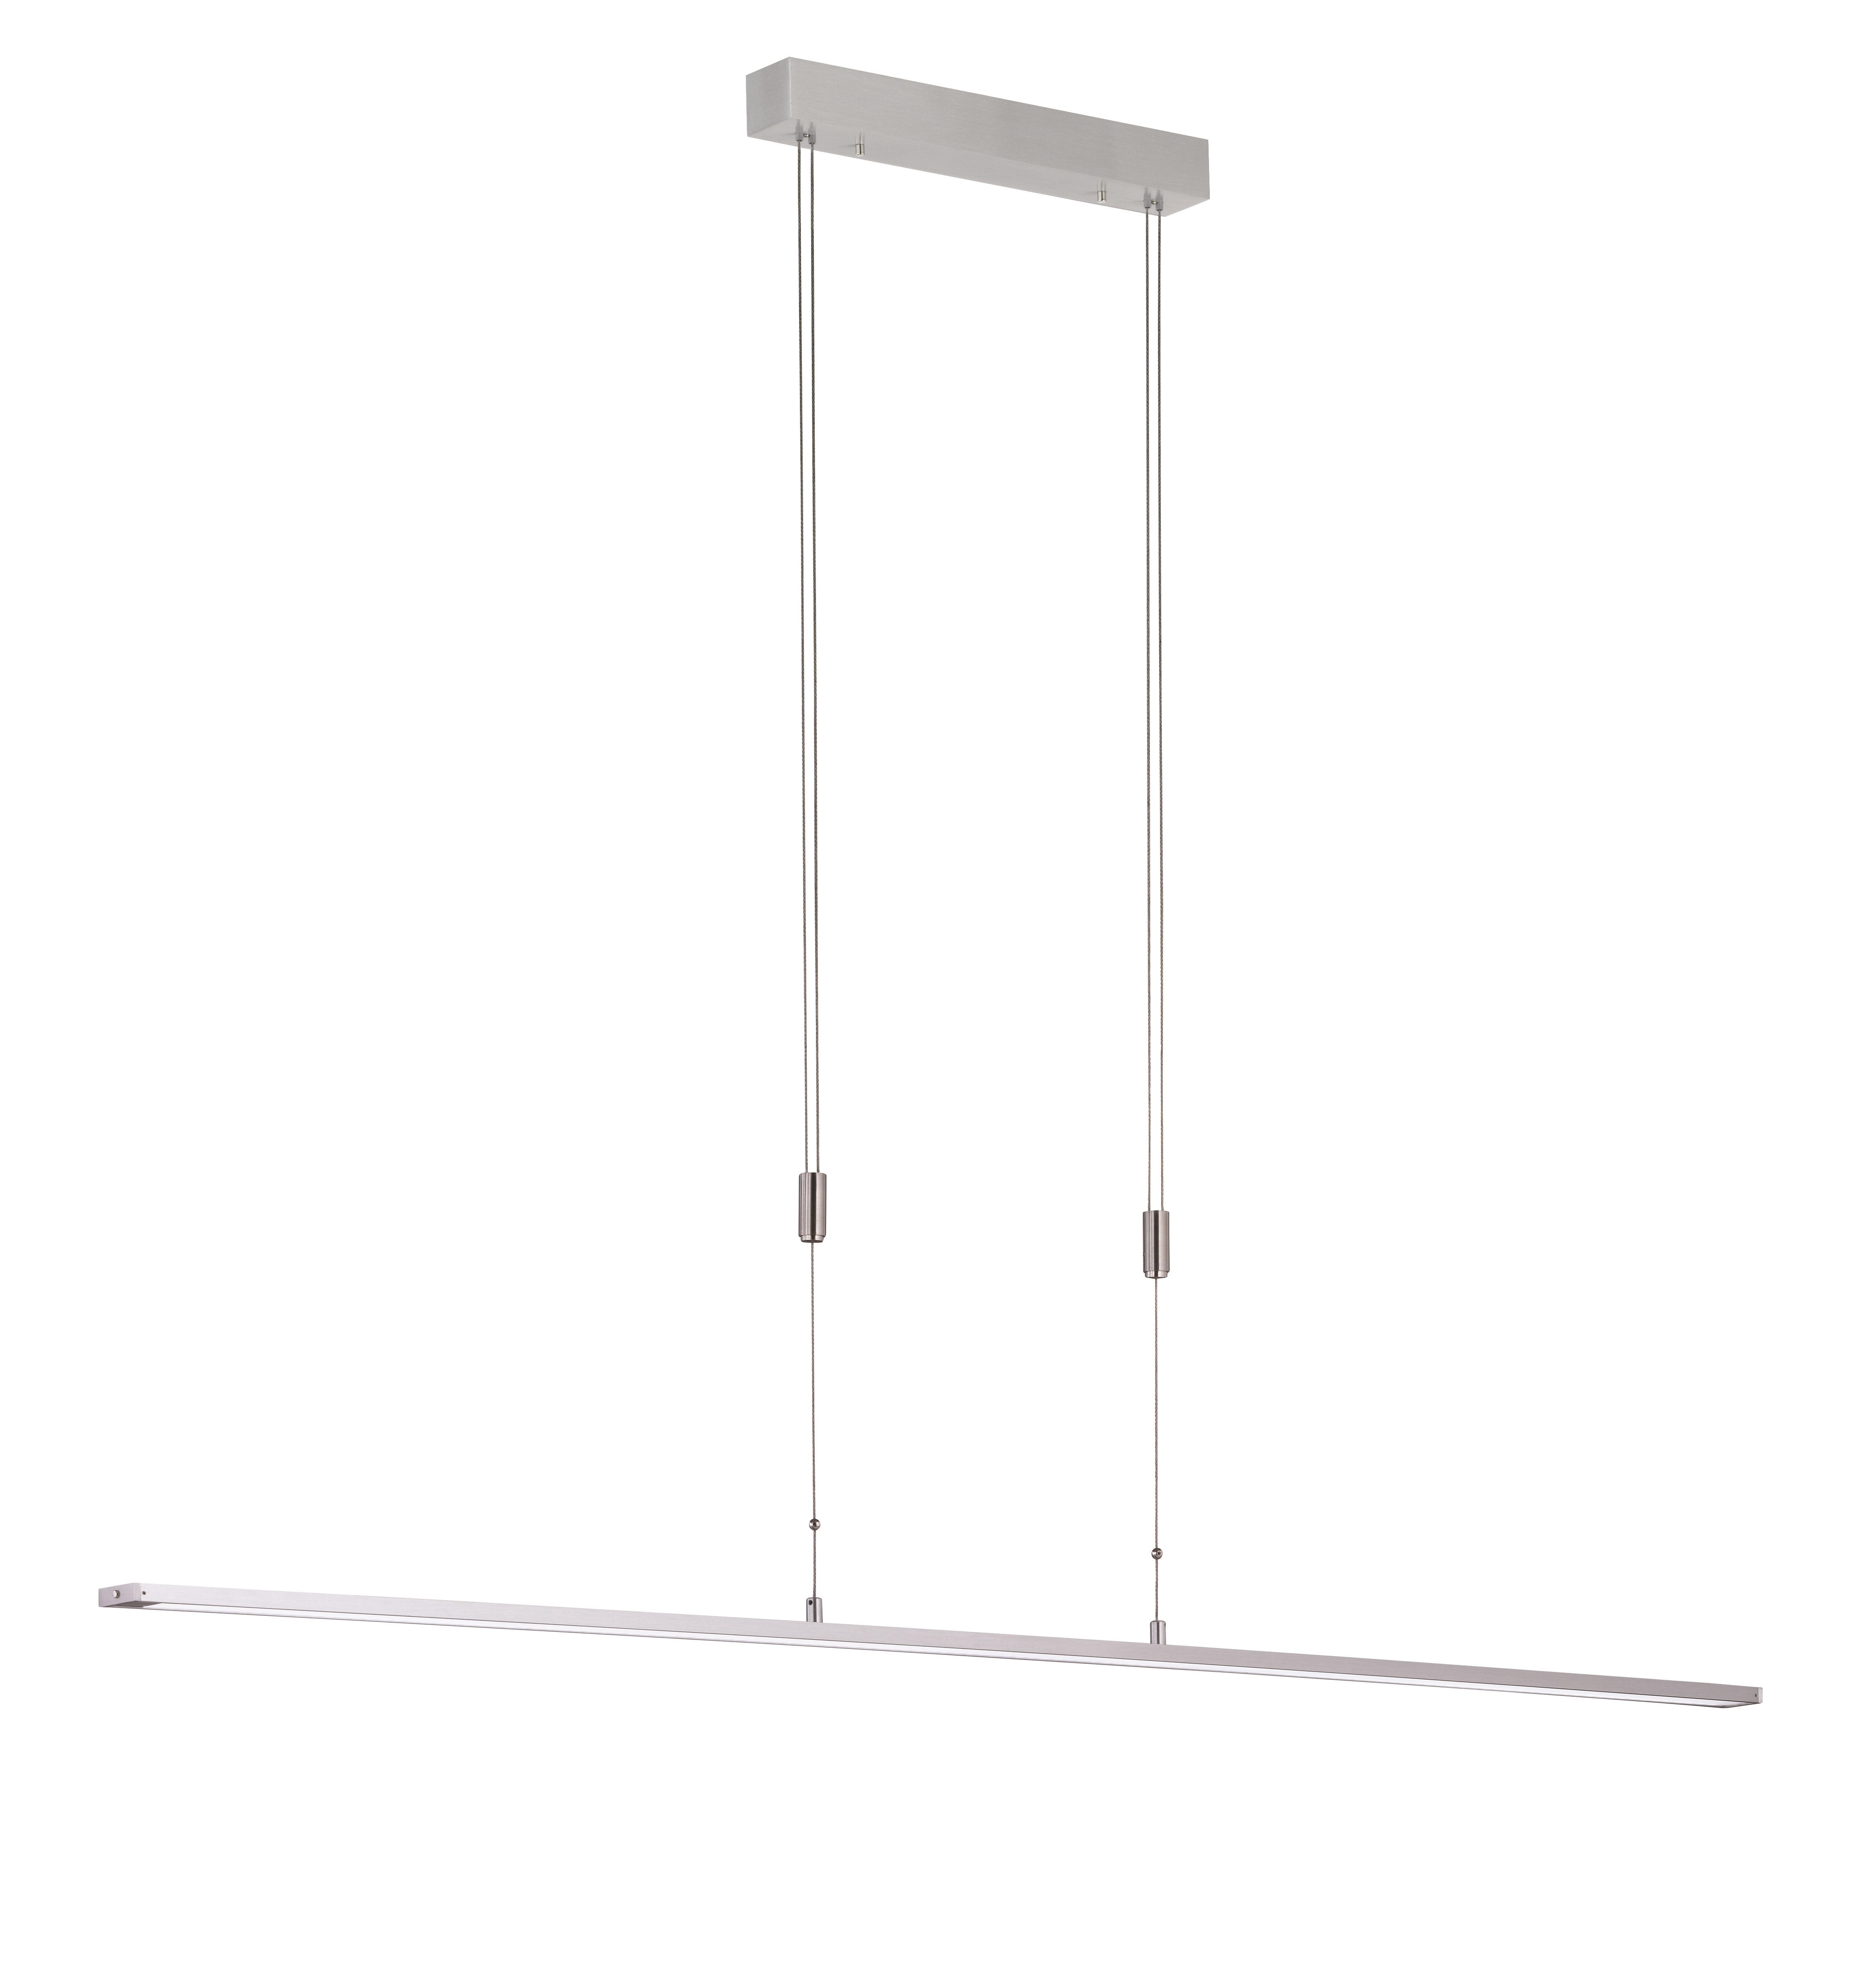 LED-HÄNGELEUCHTE 160/90-150 cm   - Alufarben/Weiß, Design, Kunststoff/Metall (160/90-150cm) - Fischer & Honsel